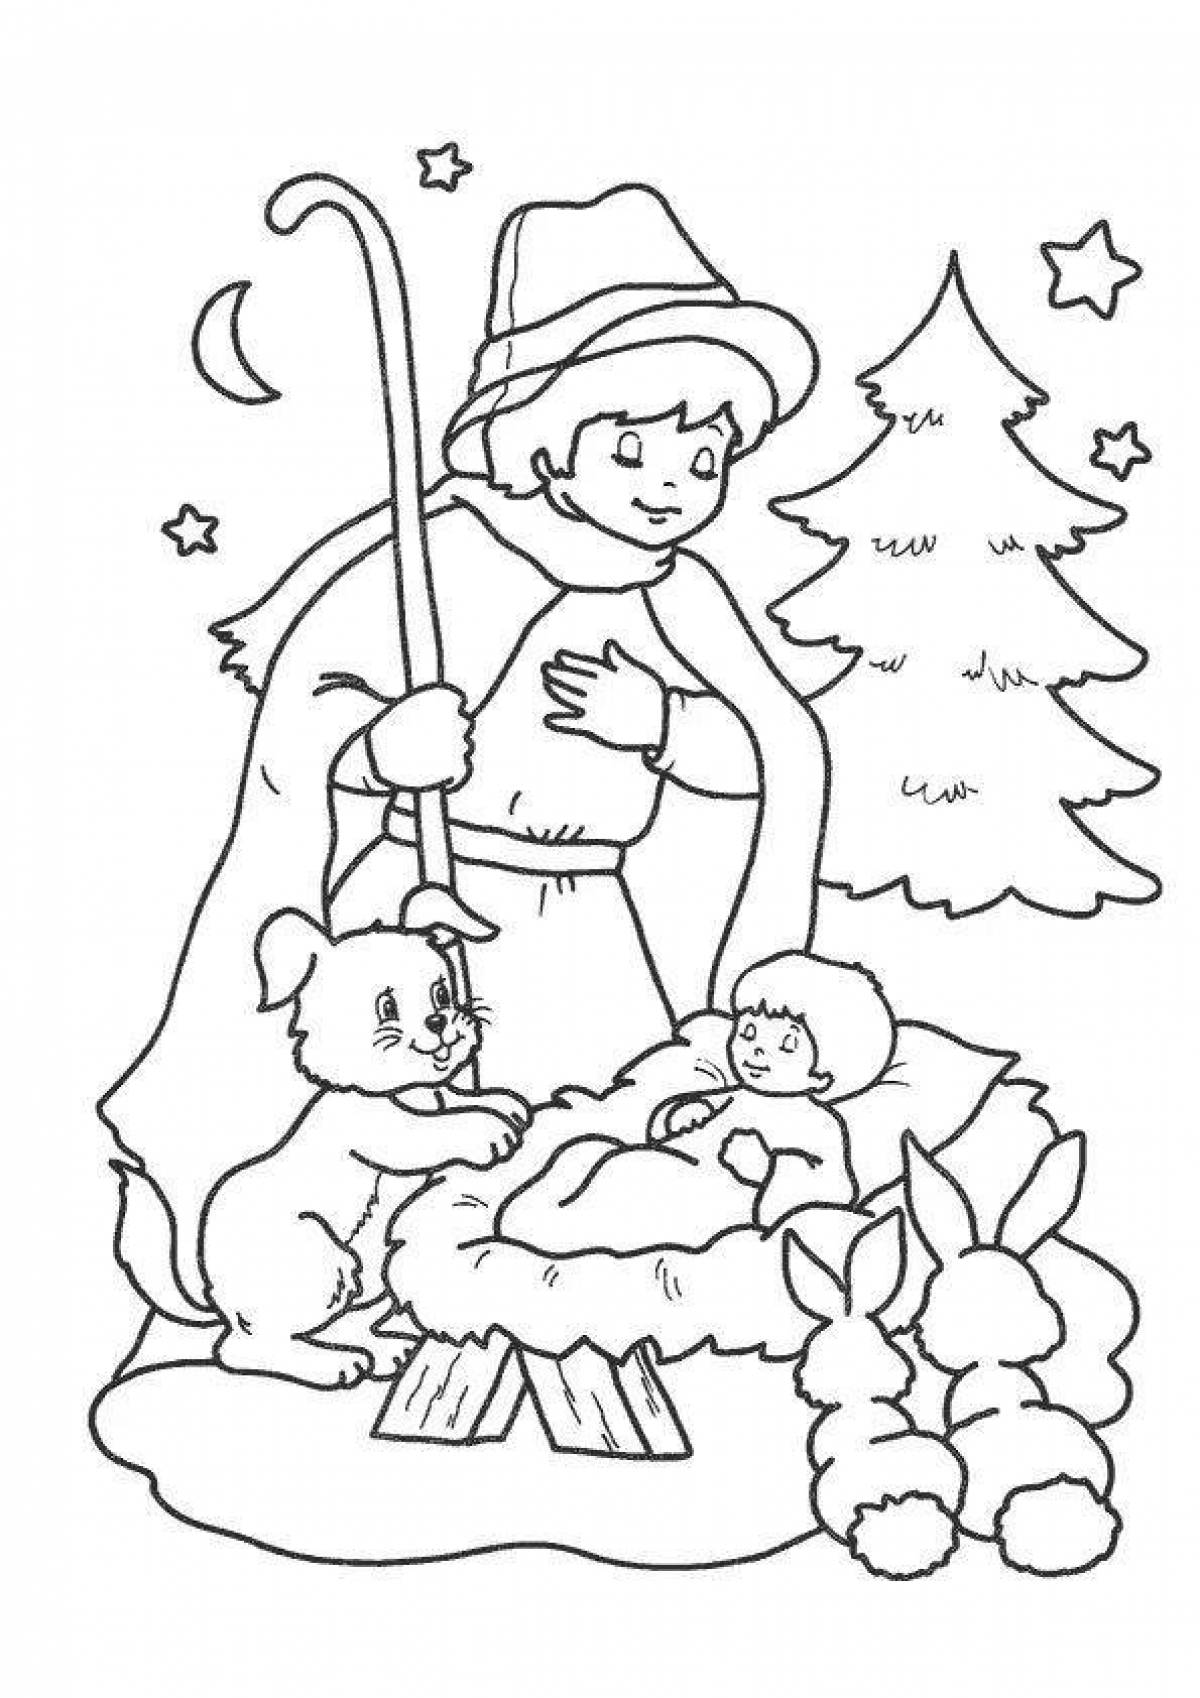 Юмористическая рождественская раскраска для детей 6-7 лет